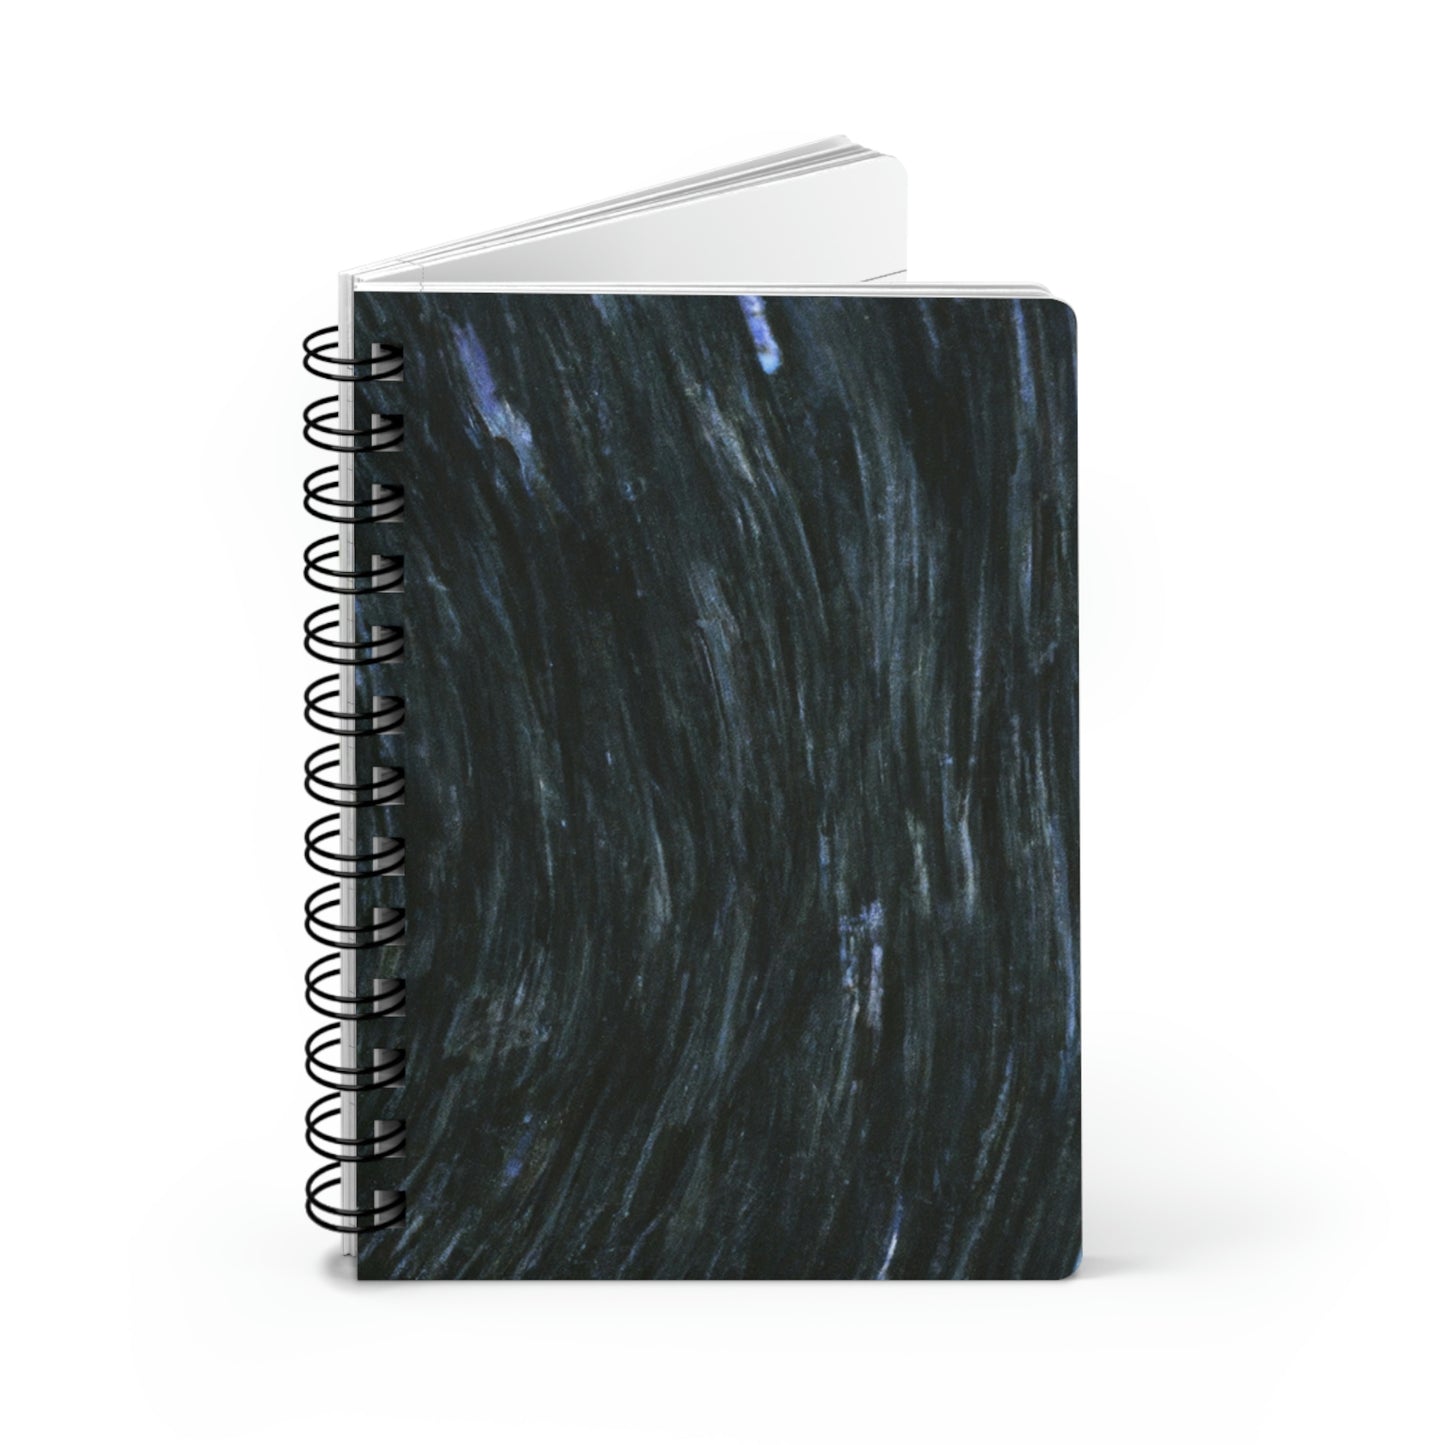 "Una tempestad celestial" - The Alien Cuaderno encuadernado en espiral